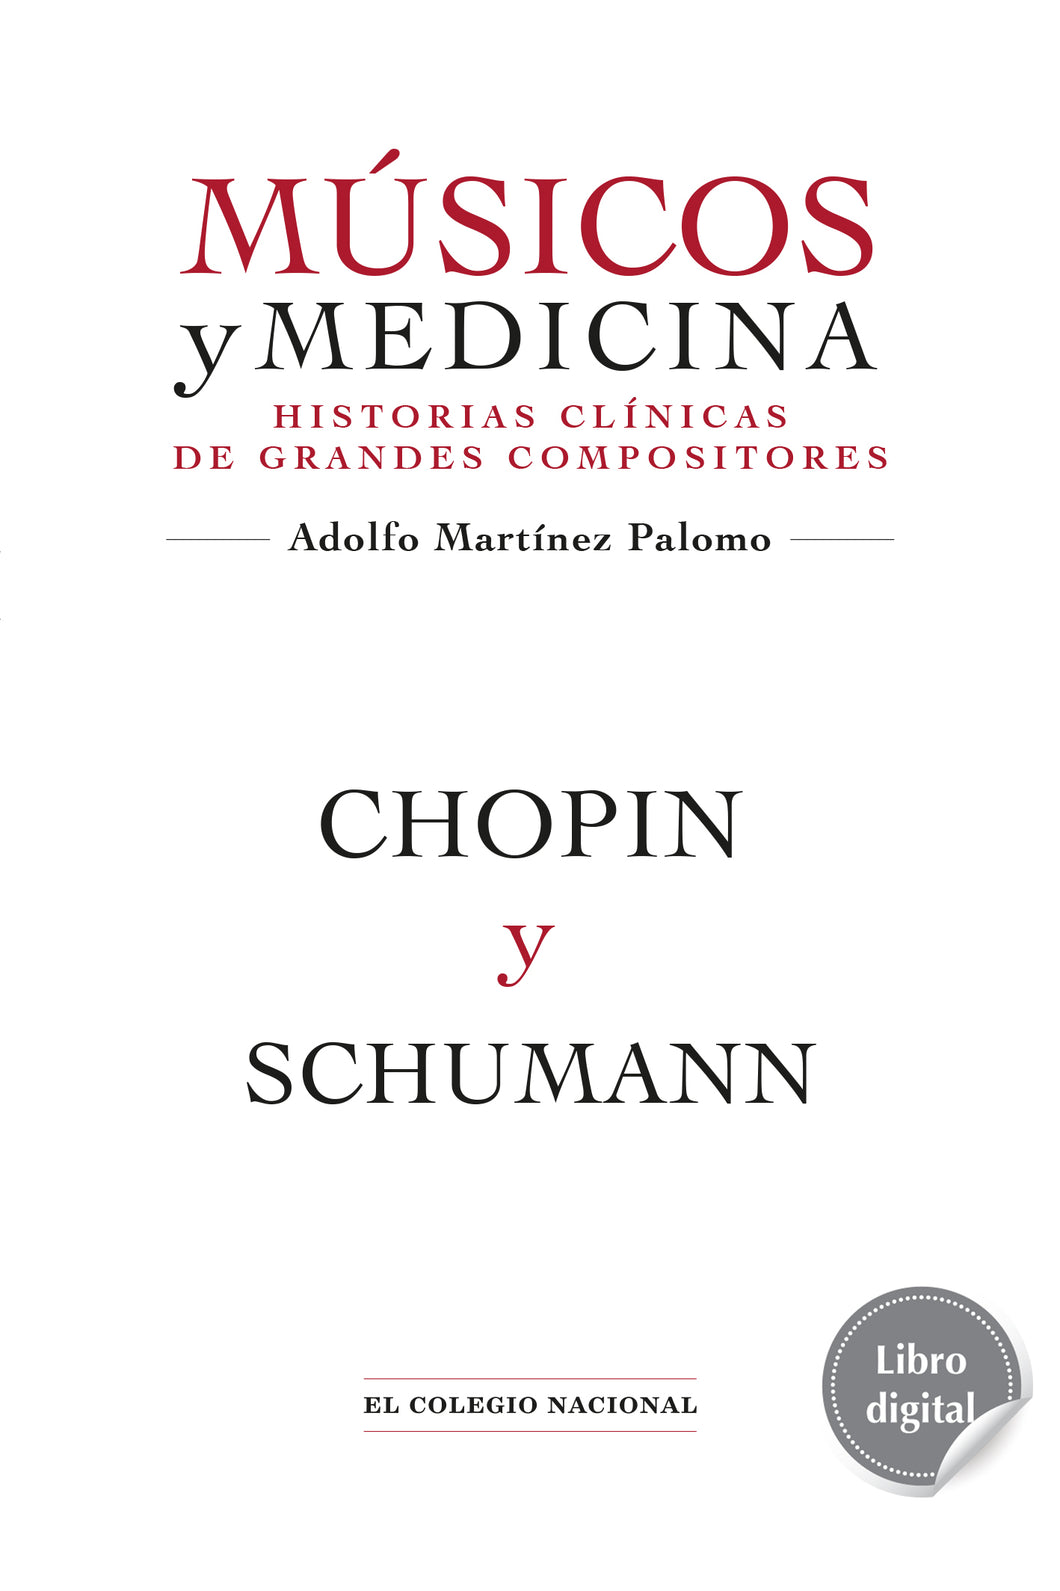 Chopin y Schumann